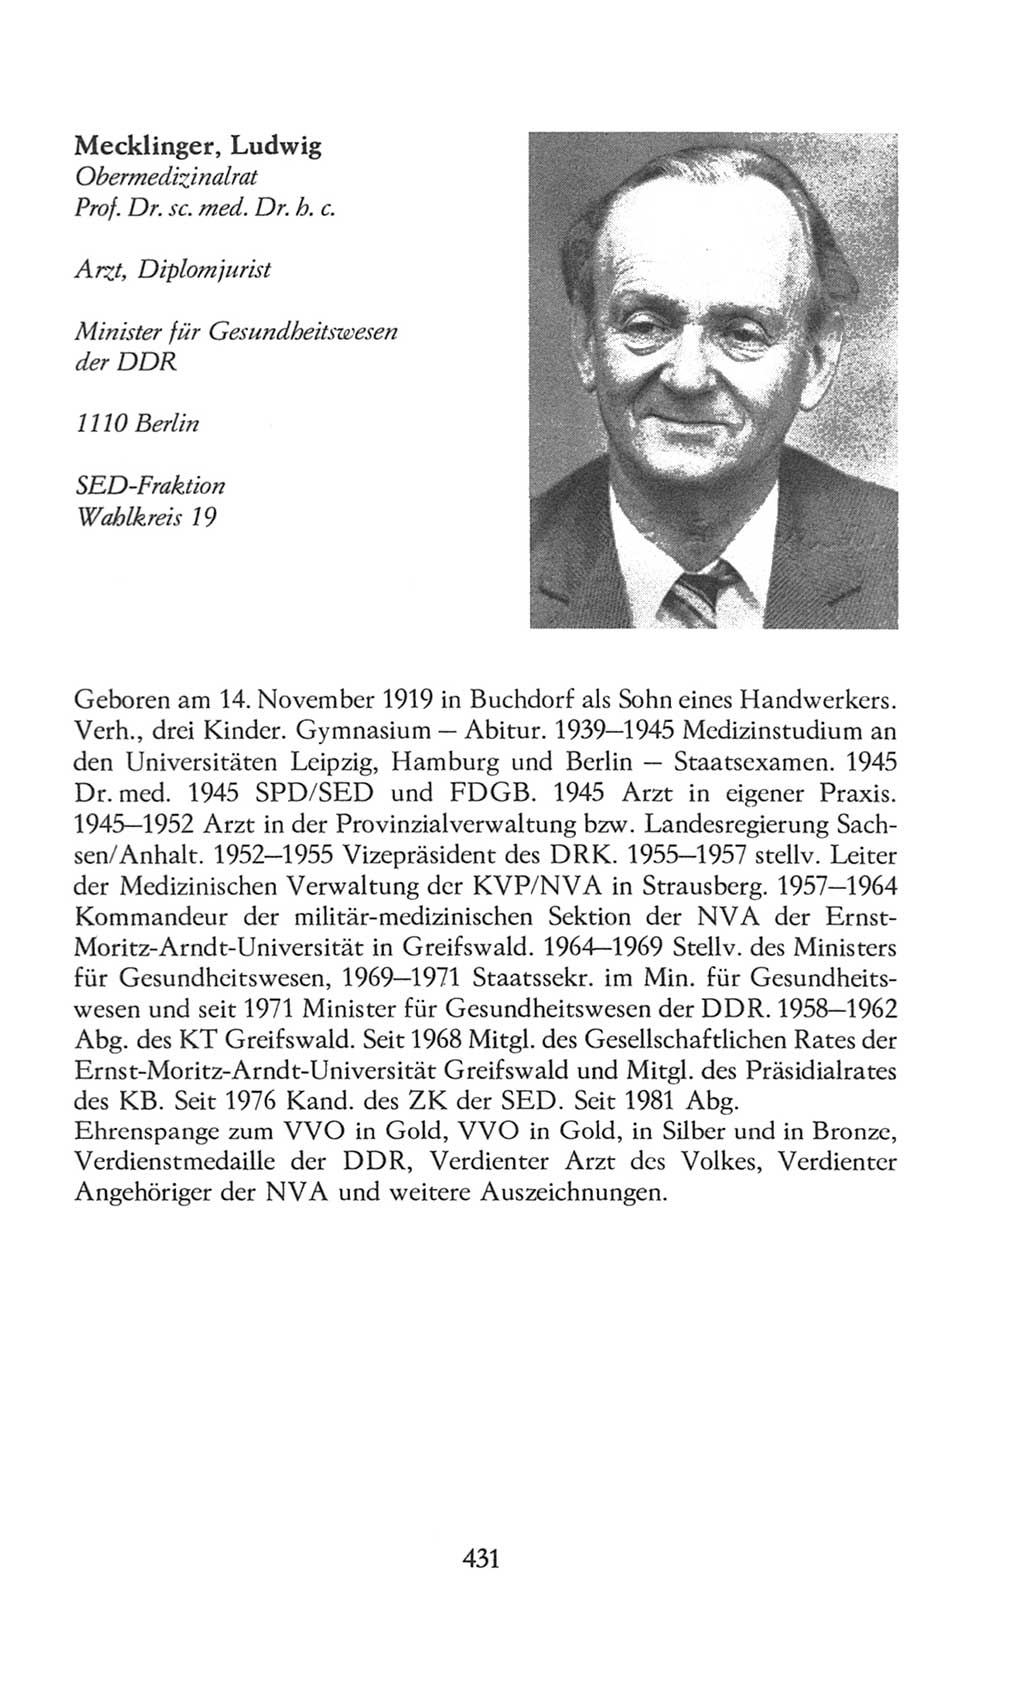 Volkskammer (VK) der Deutschen Demokratischen Republik (DDR), 8. Wahlperiode 1981-1986, Seite 431 (VK. DDR 8. WP. 1981-1986, S. 431)